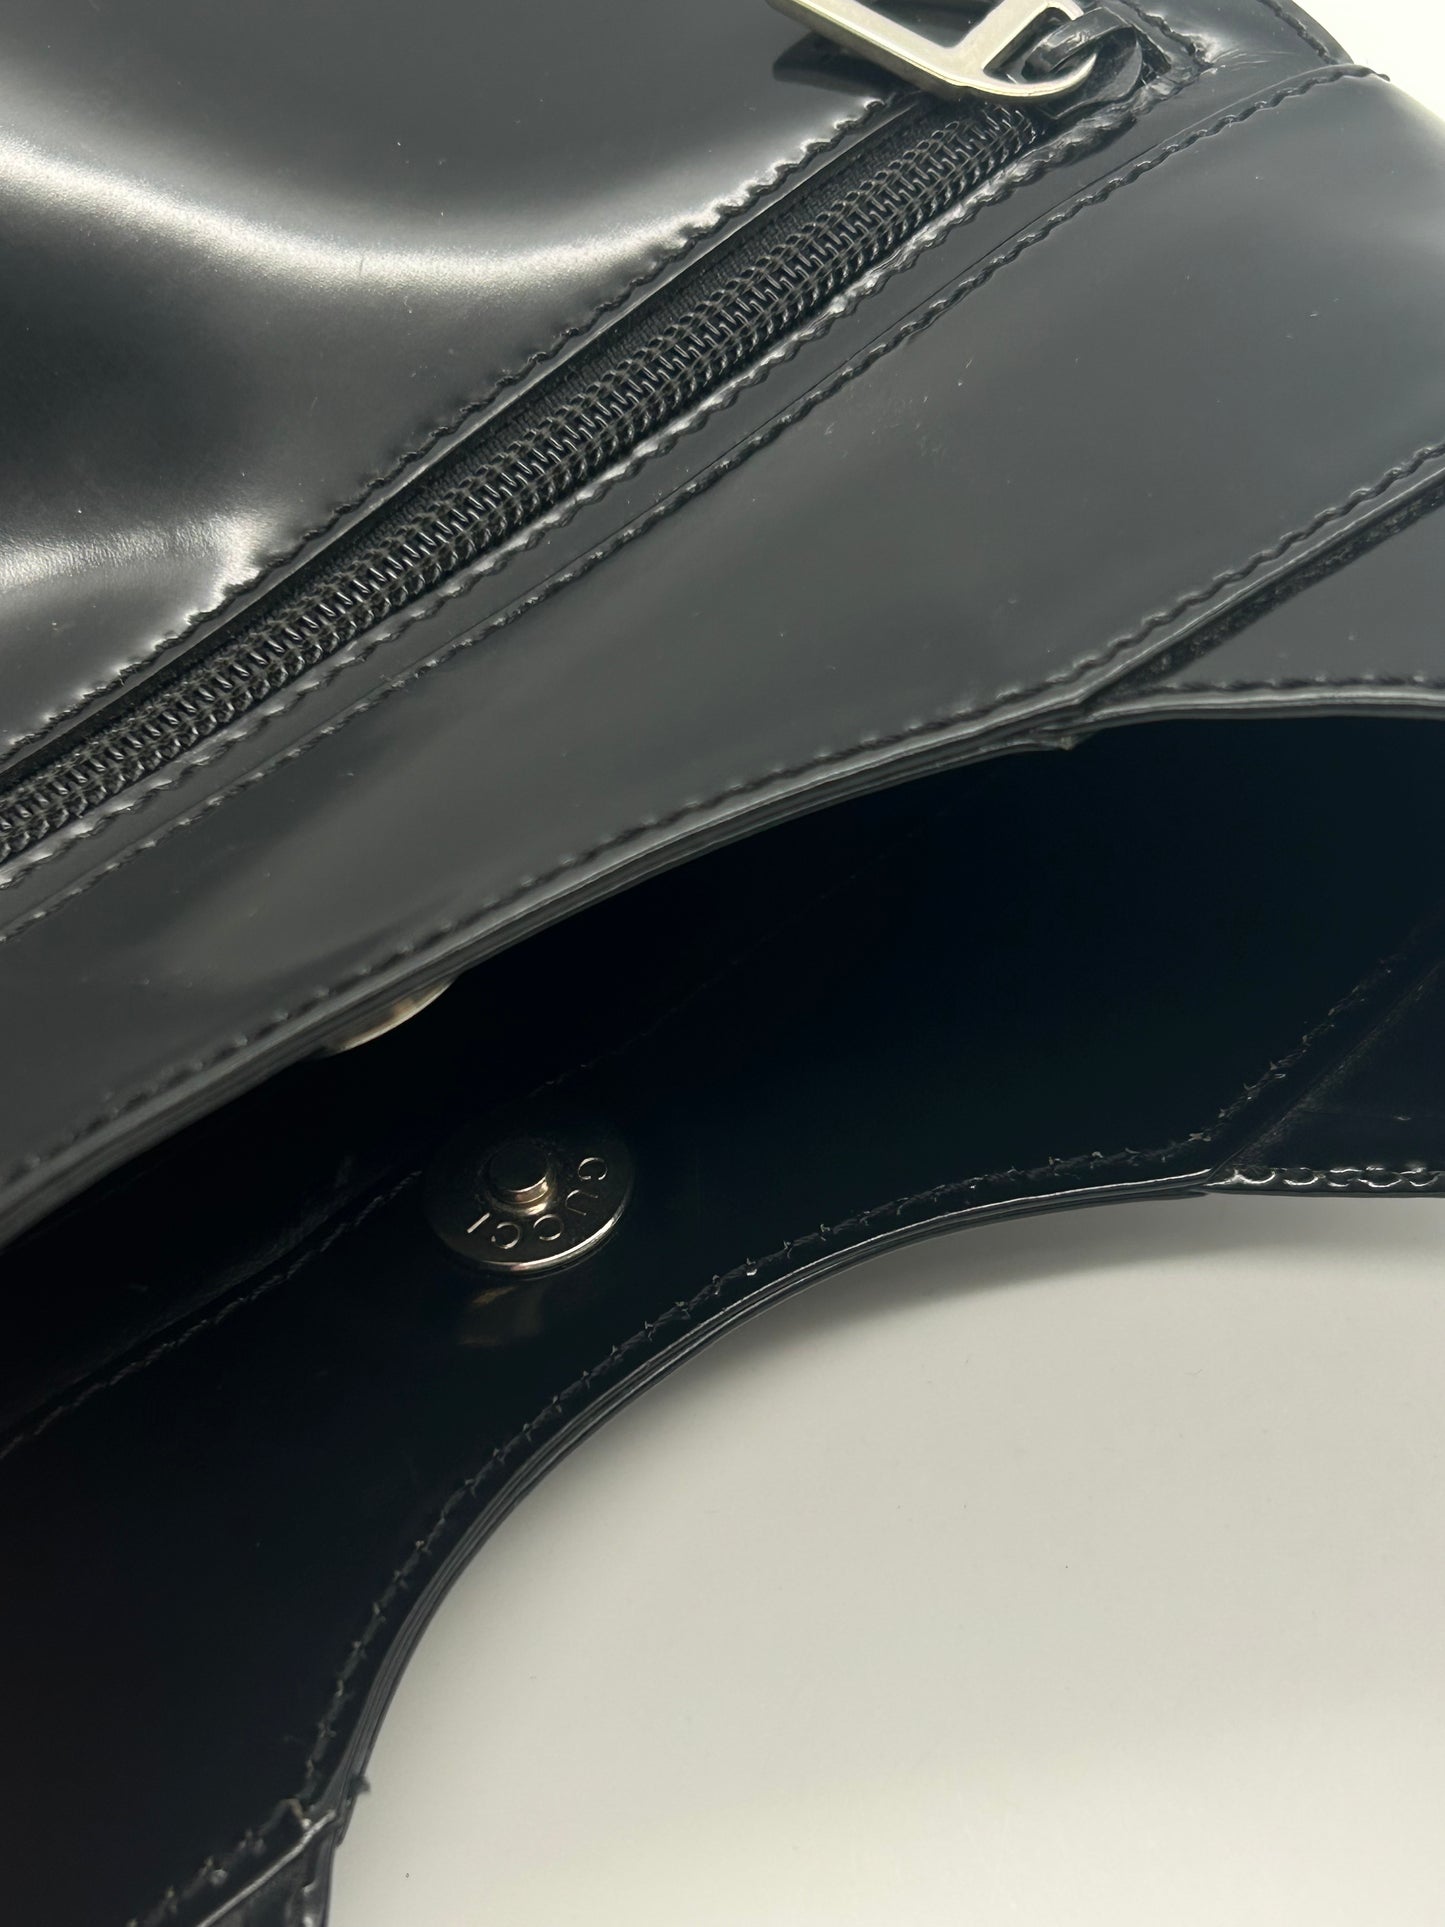 Patent Leather Shoulder Bag